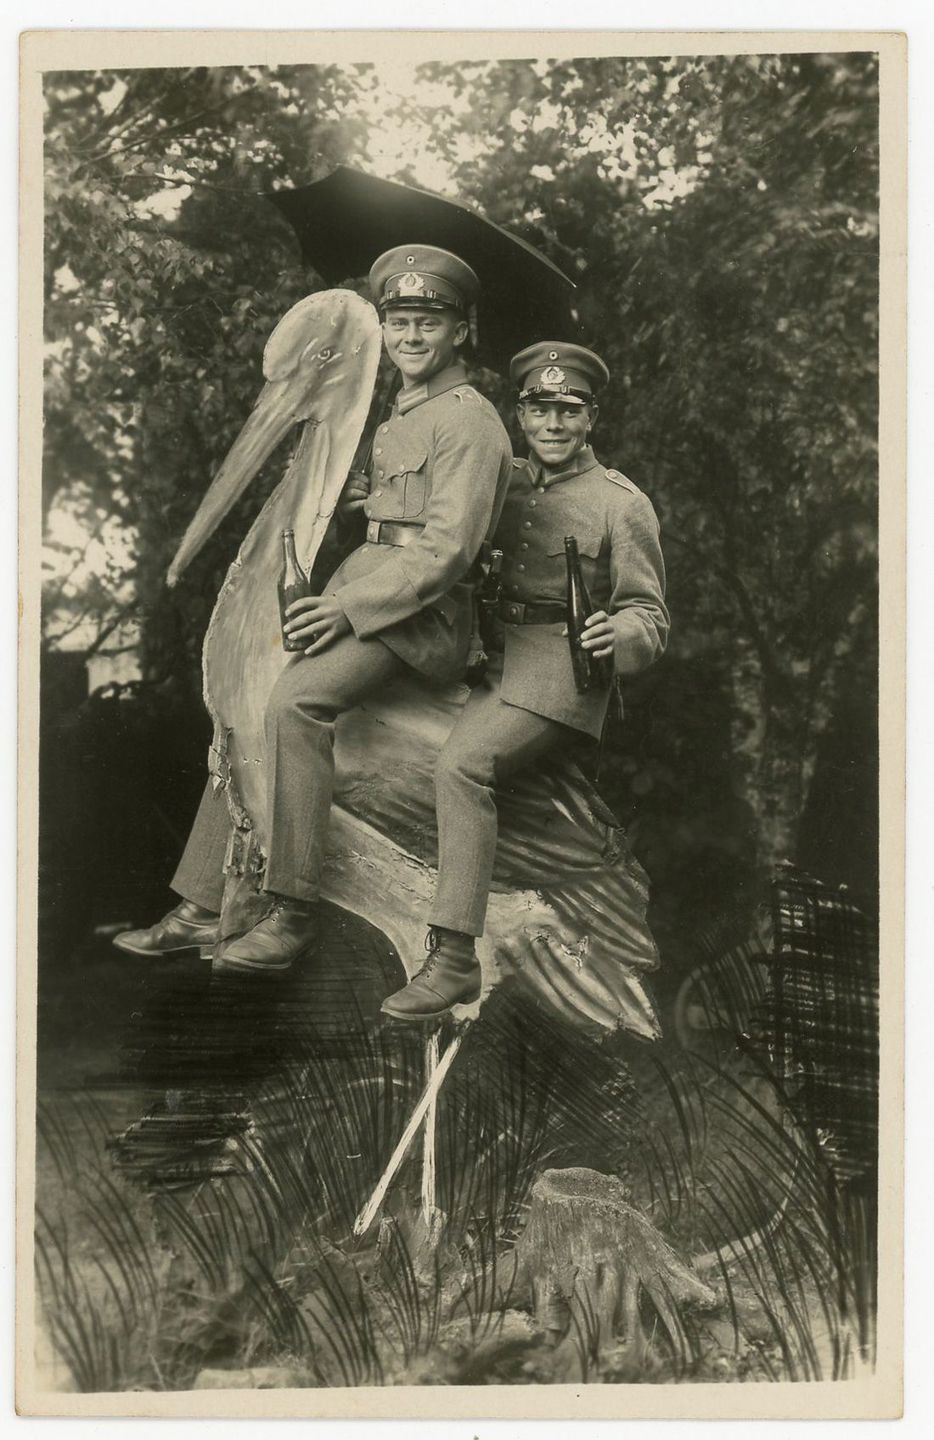 Армейский юмор и возможности мастеров фотошопа в фотографиях 1912-1945 годов 27